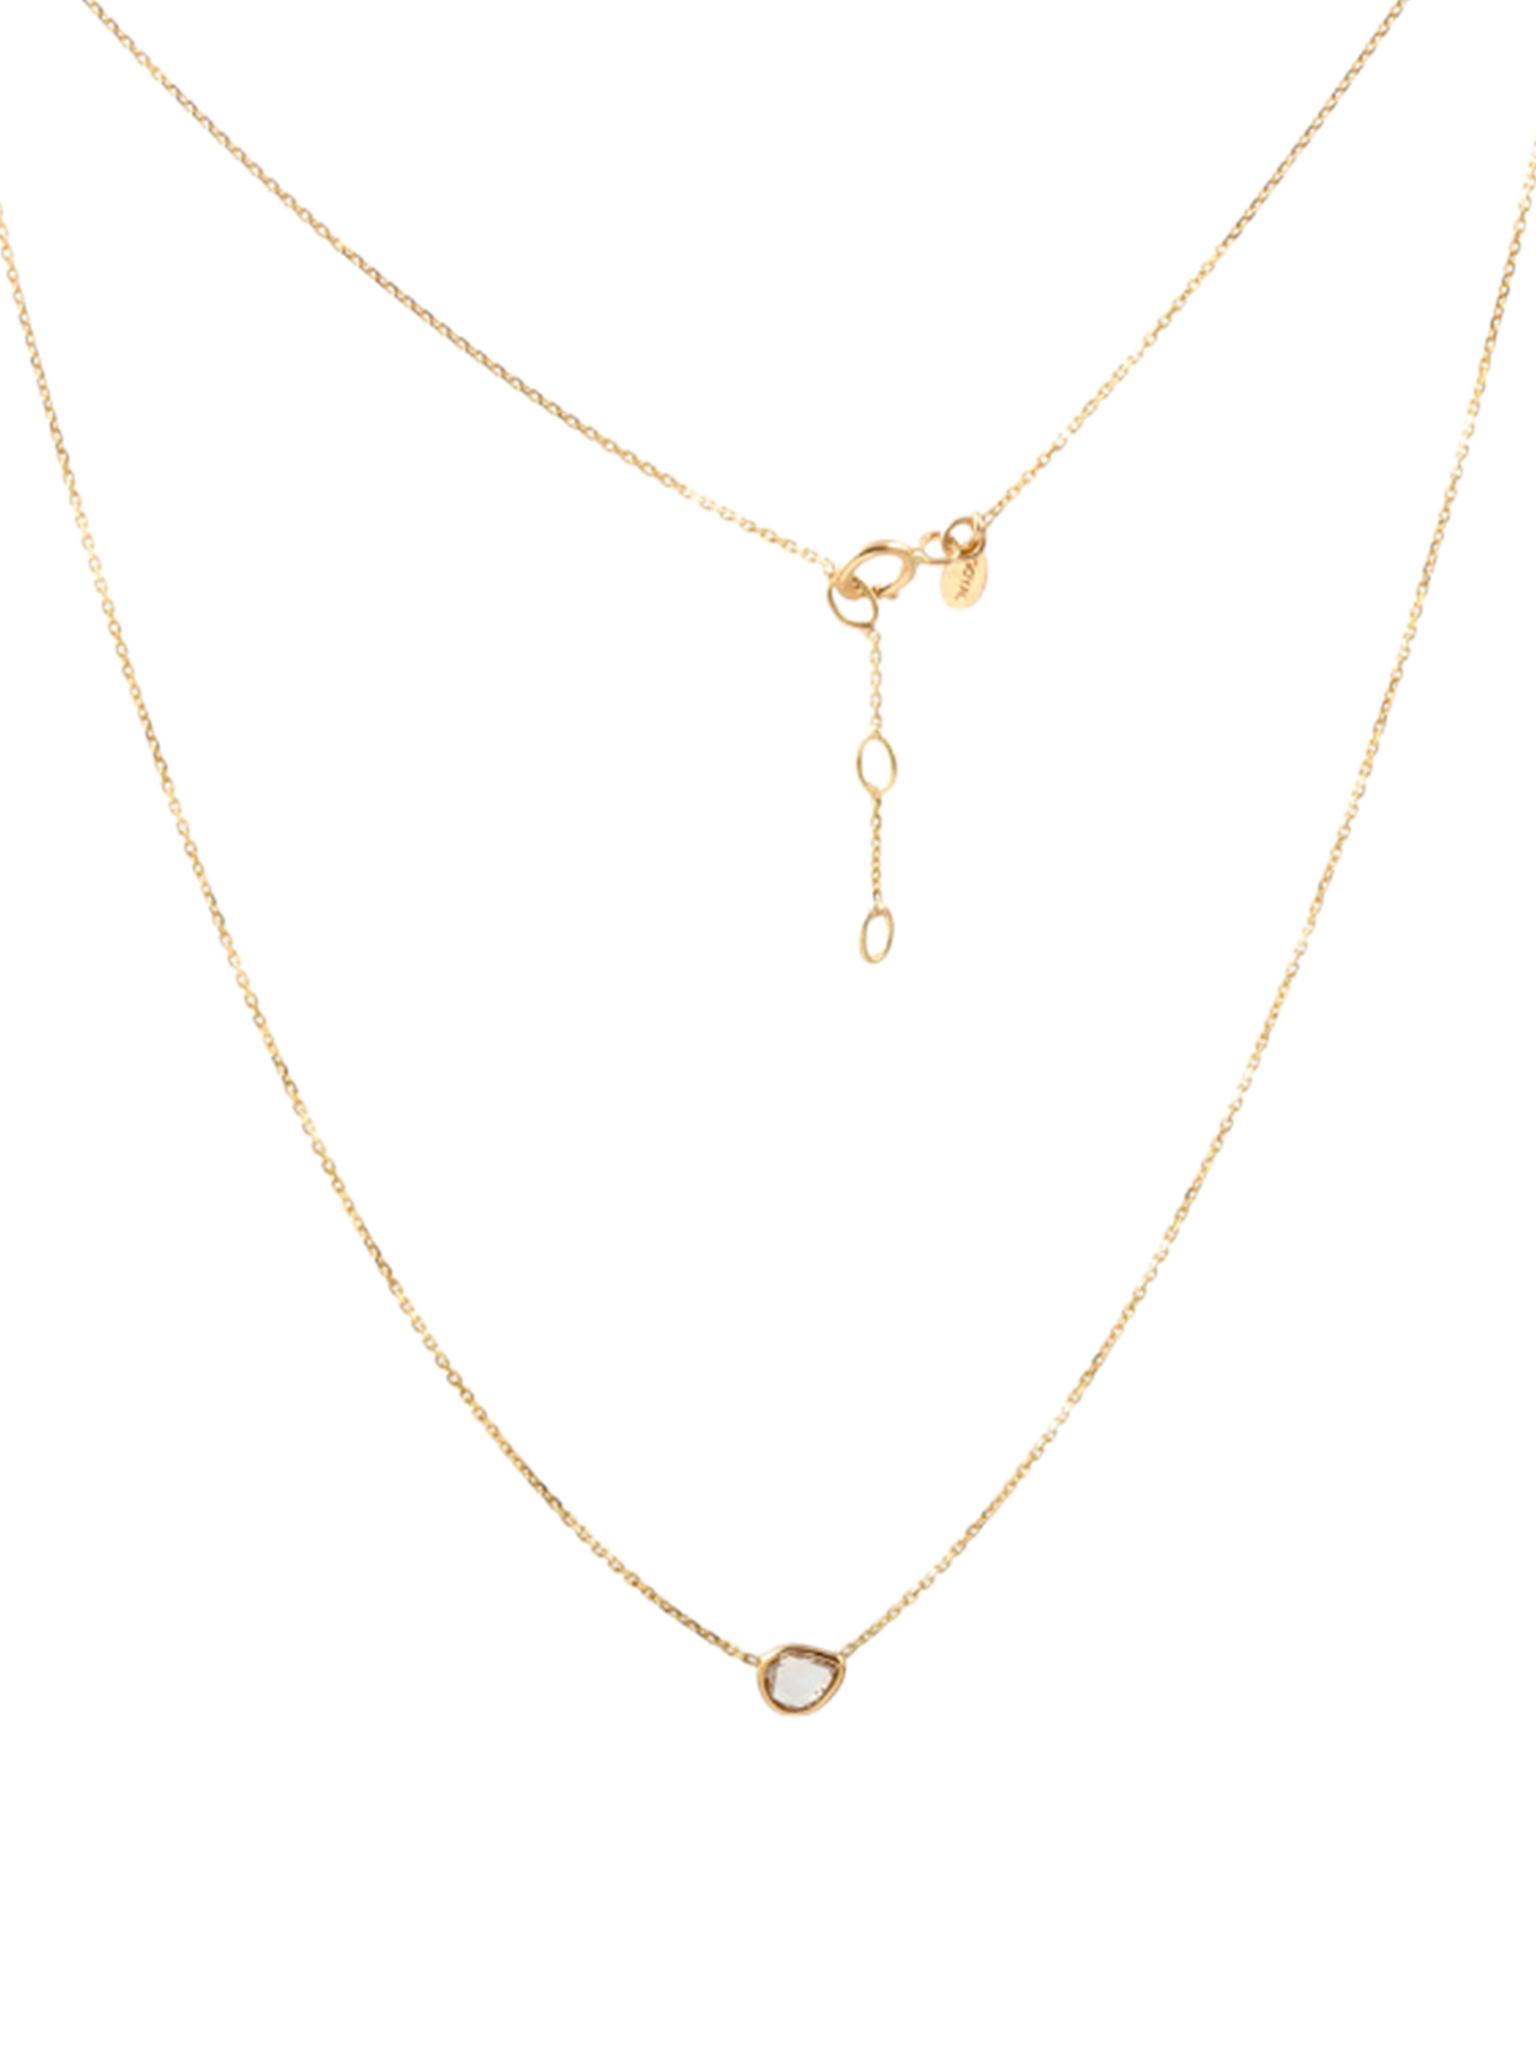 Aasha diamond necklace